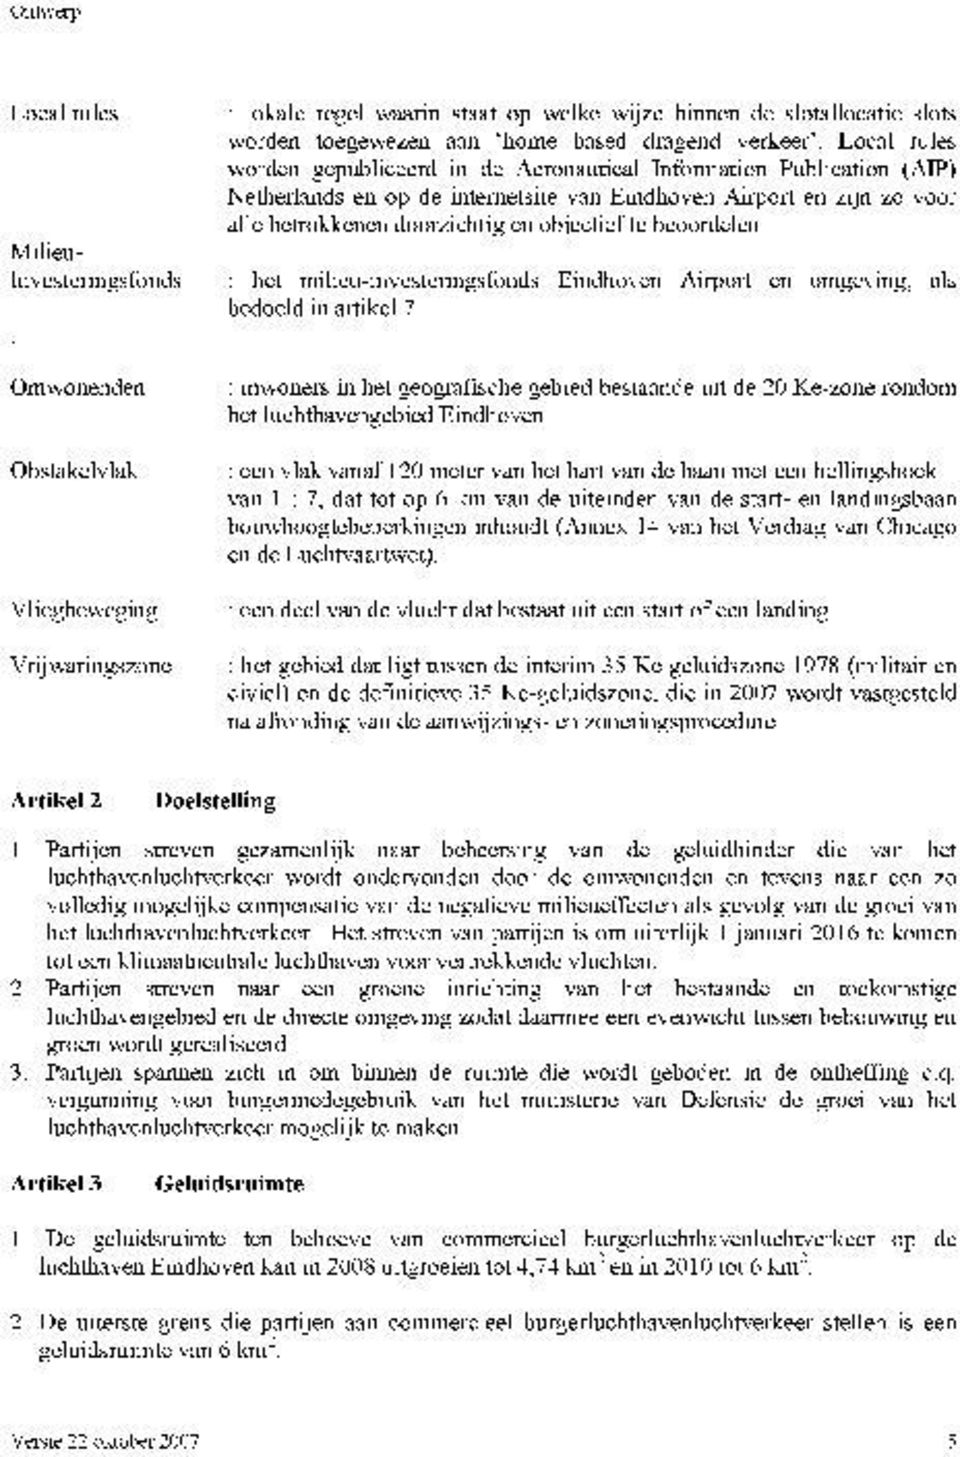 beoordelen. het milieu-investerings fonds Eindhoven Airport en omgeving, als bedoeld in artikel 7.